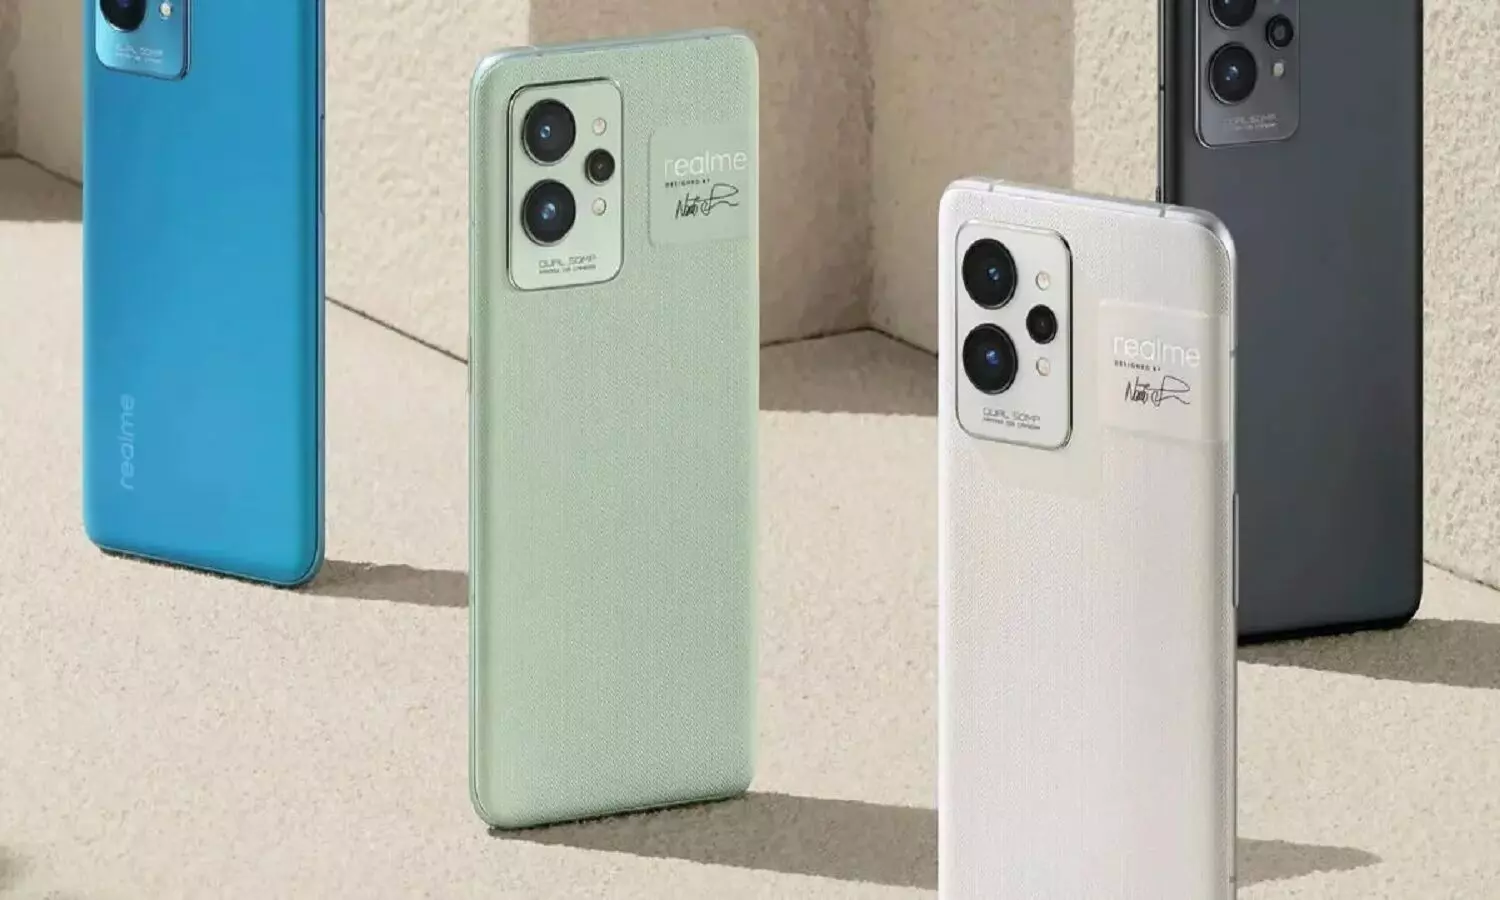 Realme लांच करेगा झटपट चार्ज होने वाला फोन, डिजाइन और फीचर्स हुए लीक